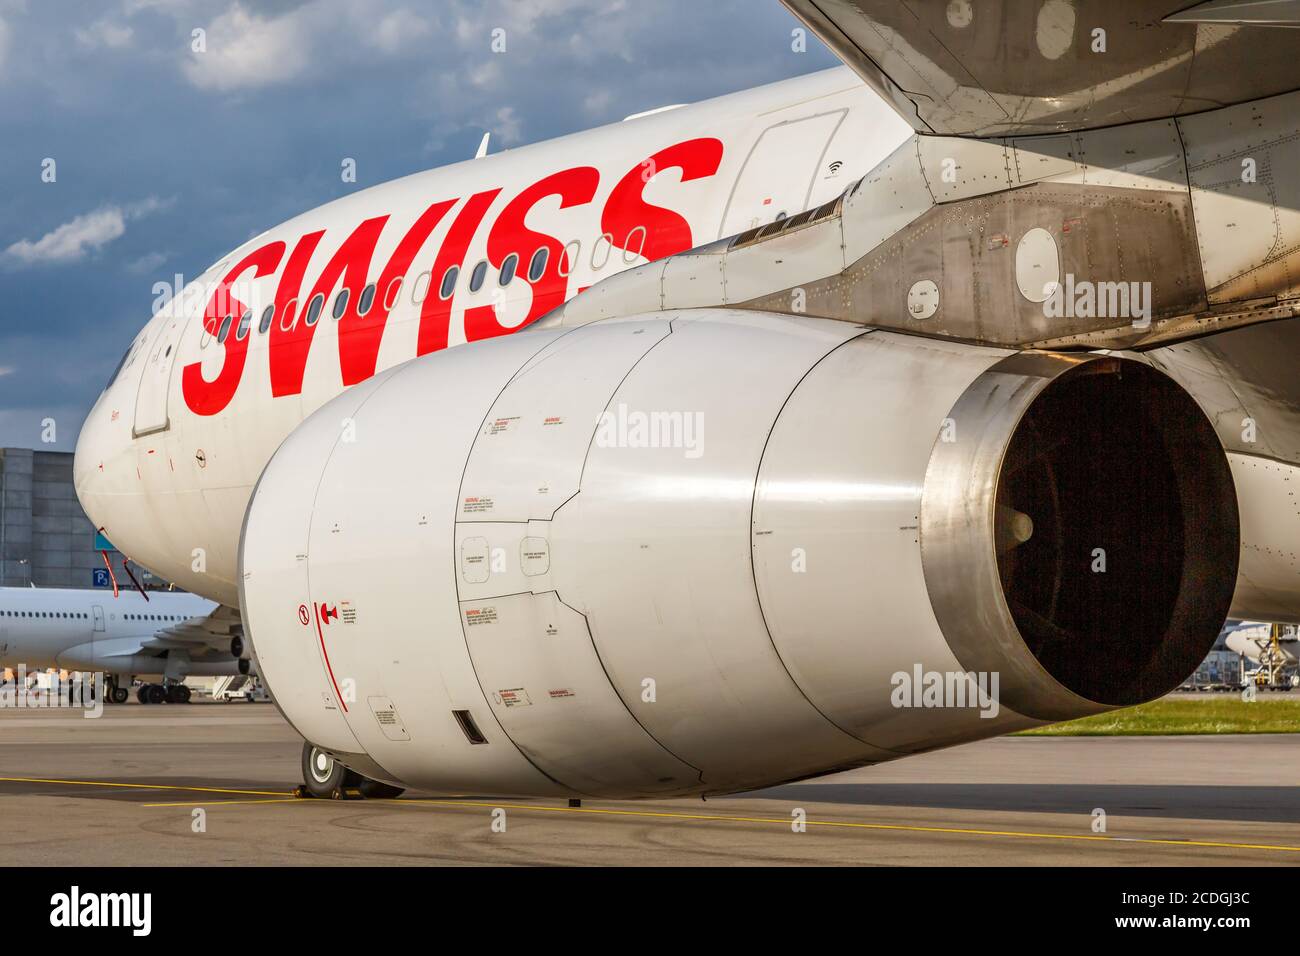 Zurich, Switzerland - July 22, 2020: Swiss Airbus A330-300 airplane at Zurich Airport (ZRH) in Switzerland. Airbus is a European aircraft manufacturer Stock Photo